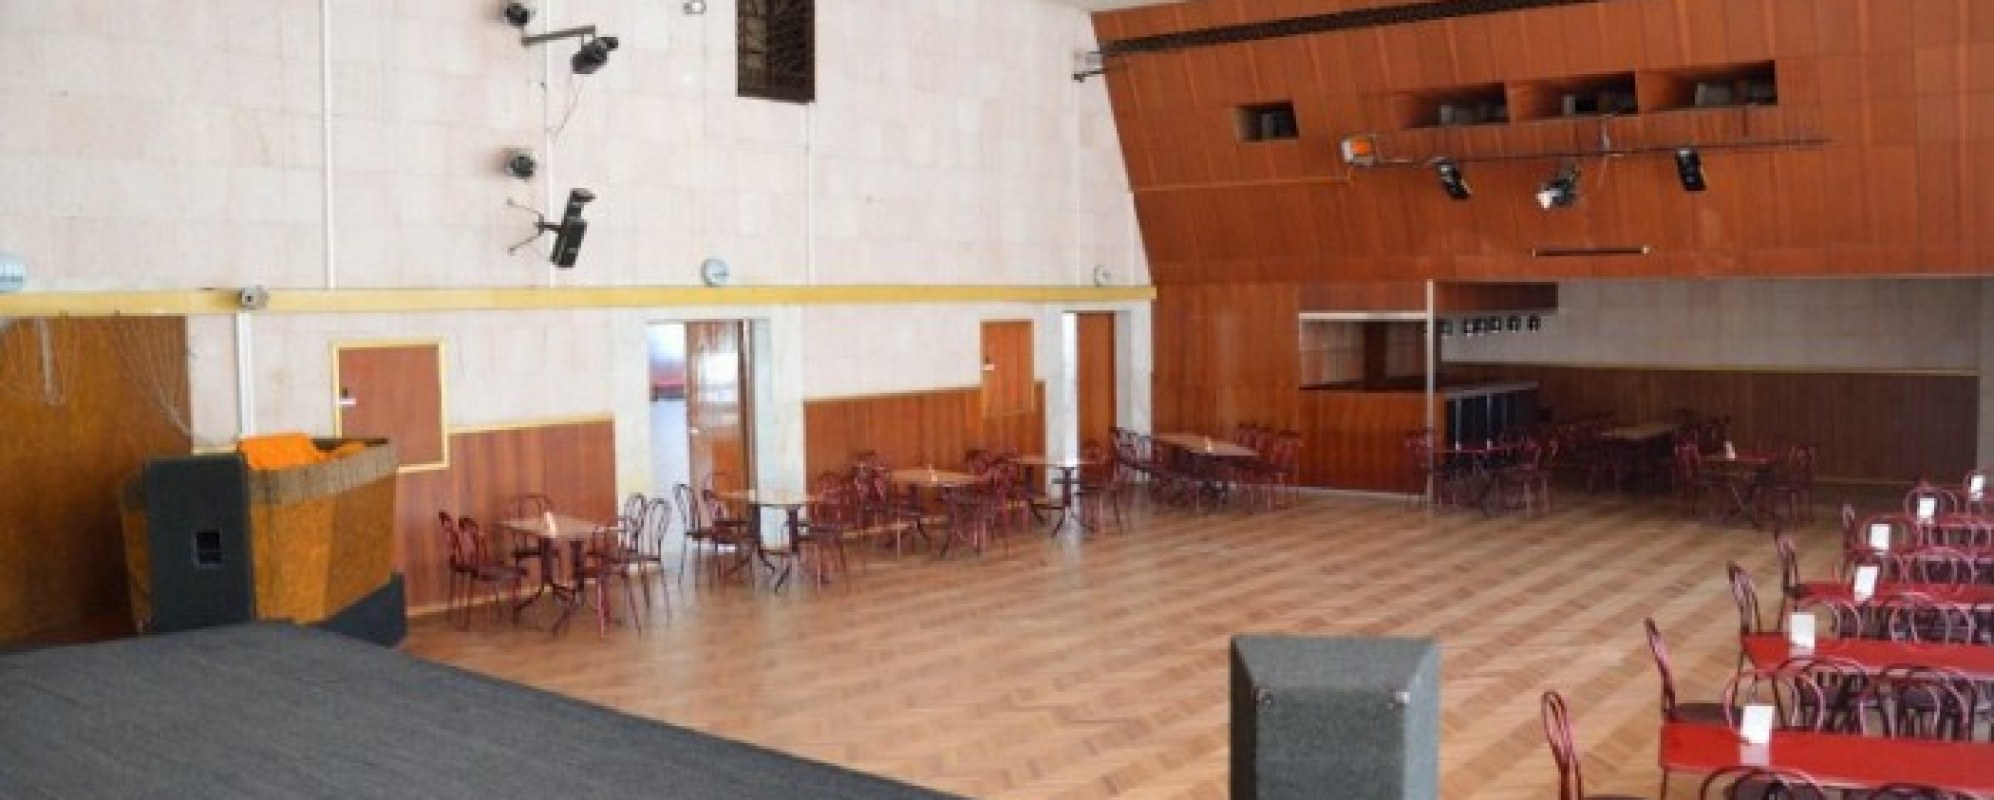 Фотографии концертного зала Малый зал ДК Корабел